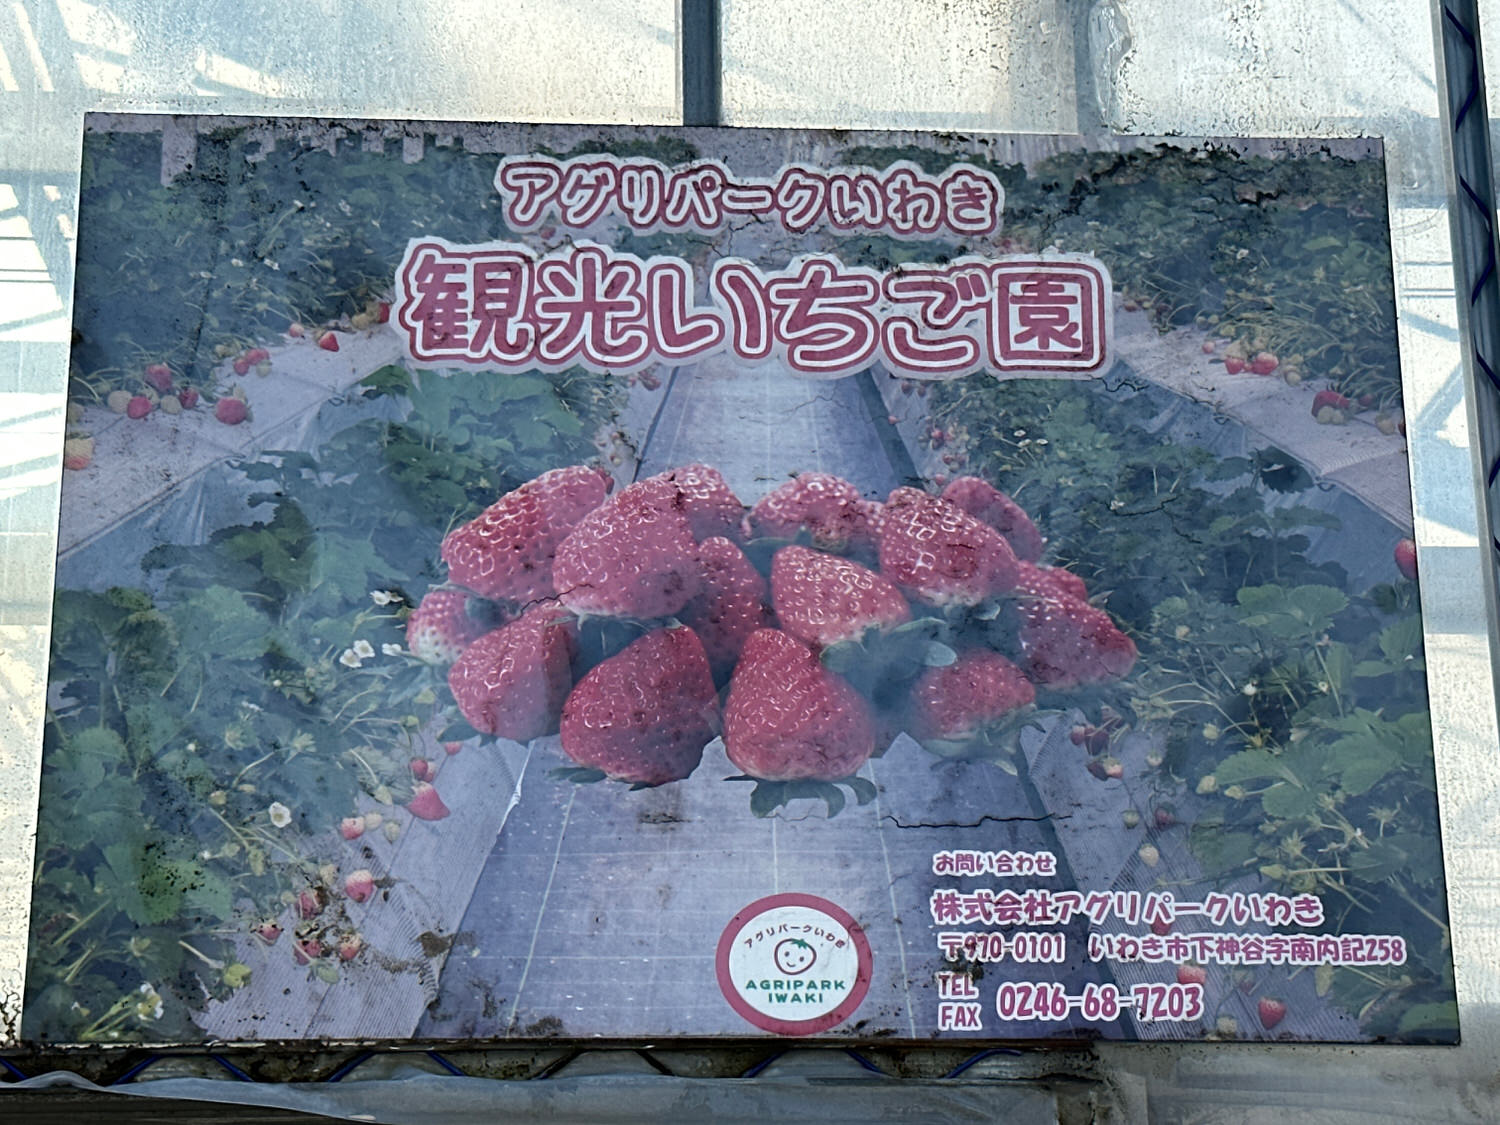 Iwaki tour strawberry 000 26